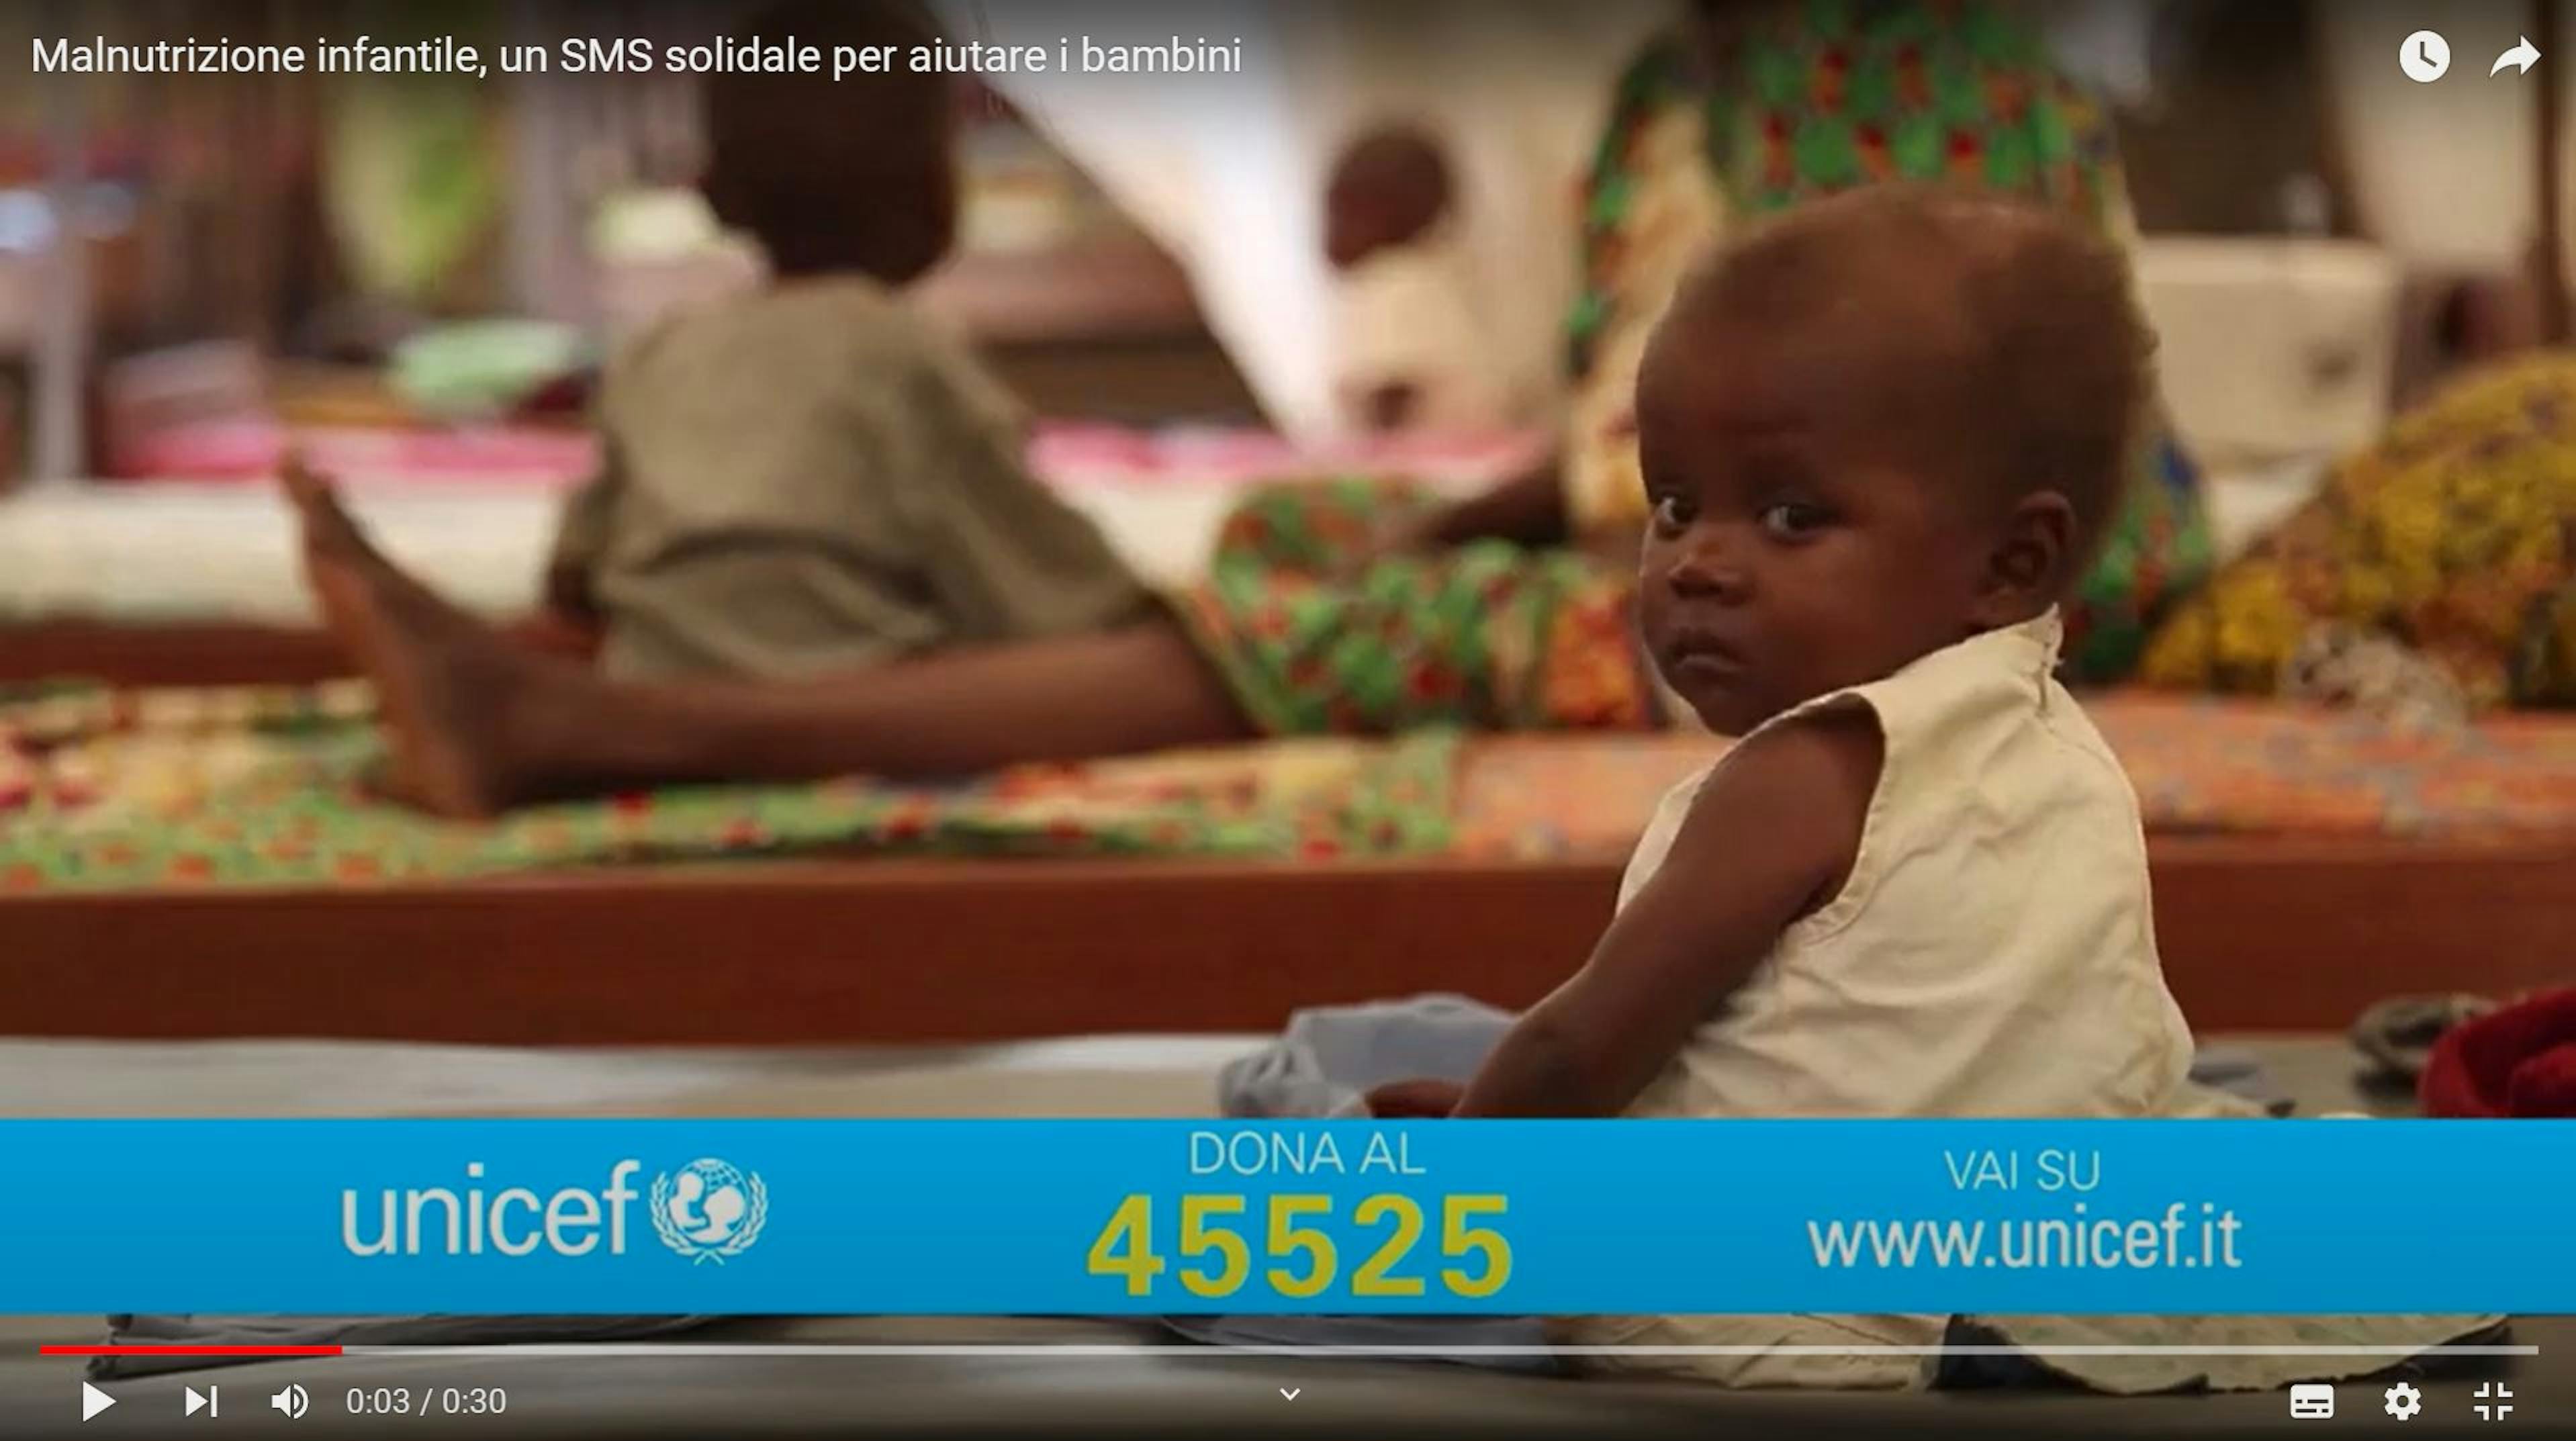 SMS al 45525 per donare all'UNICEF.